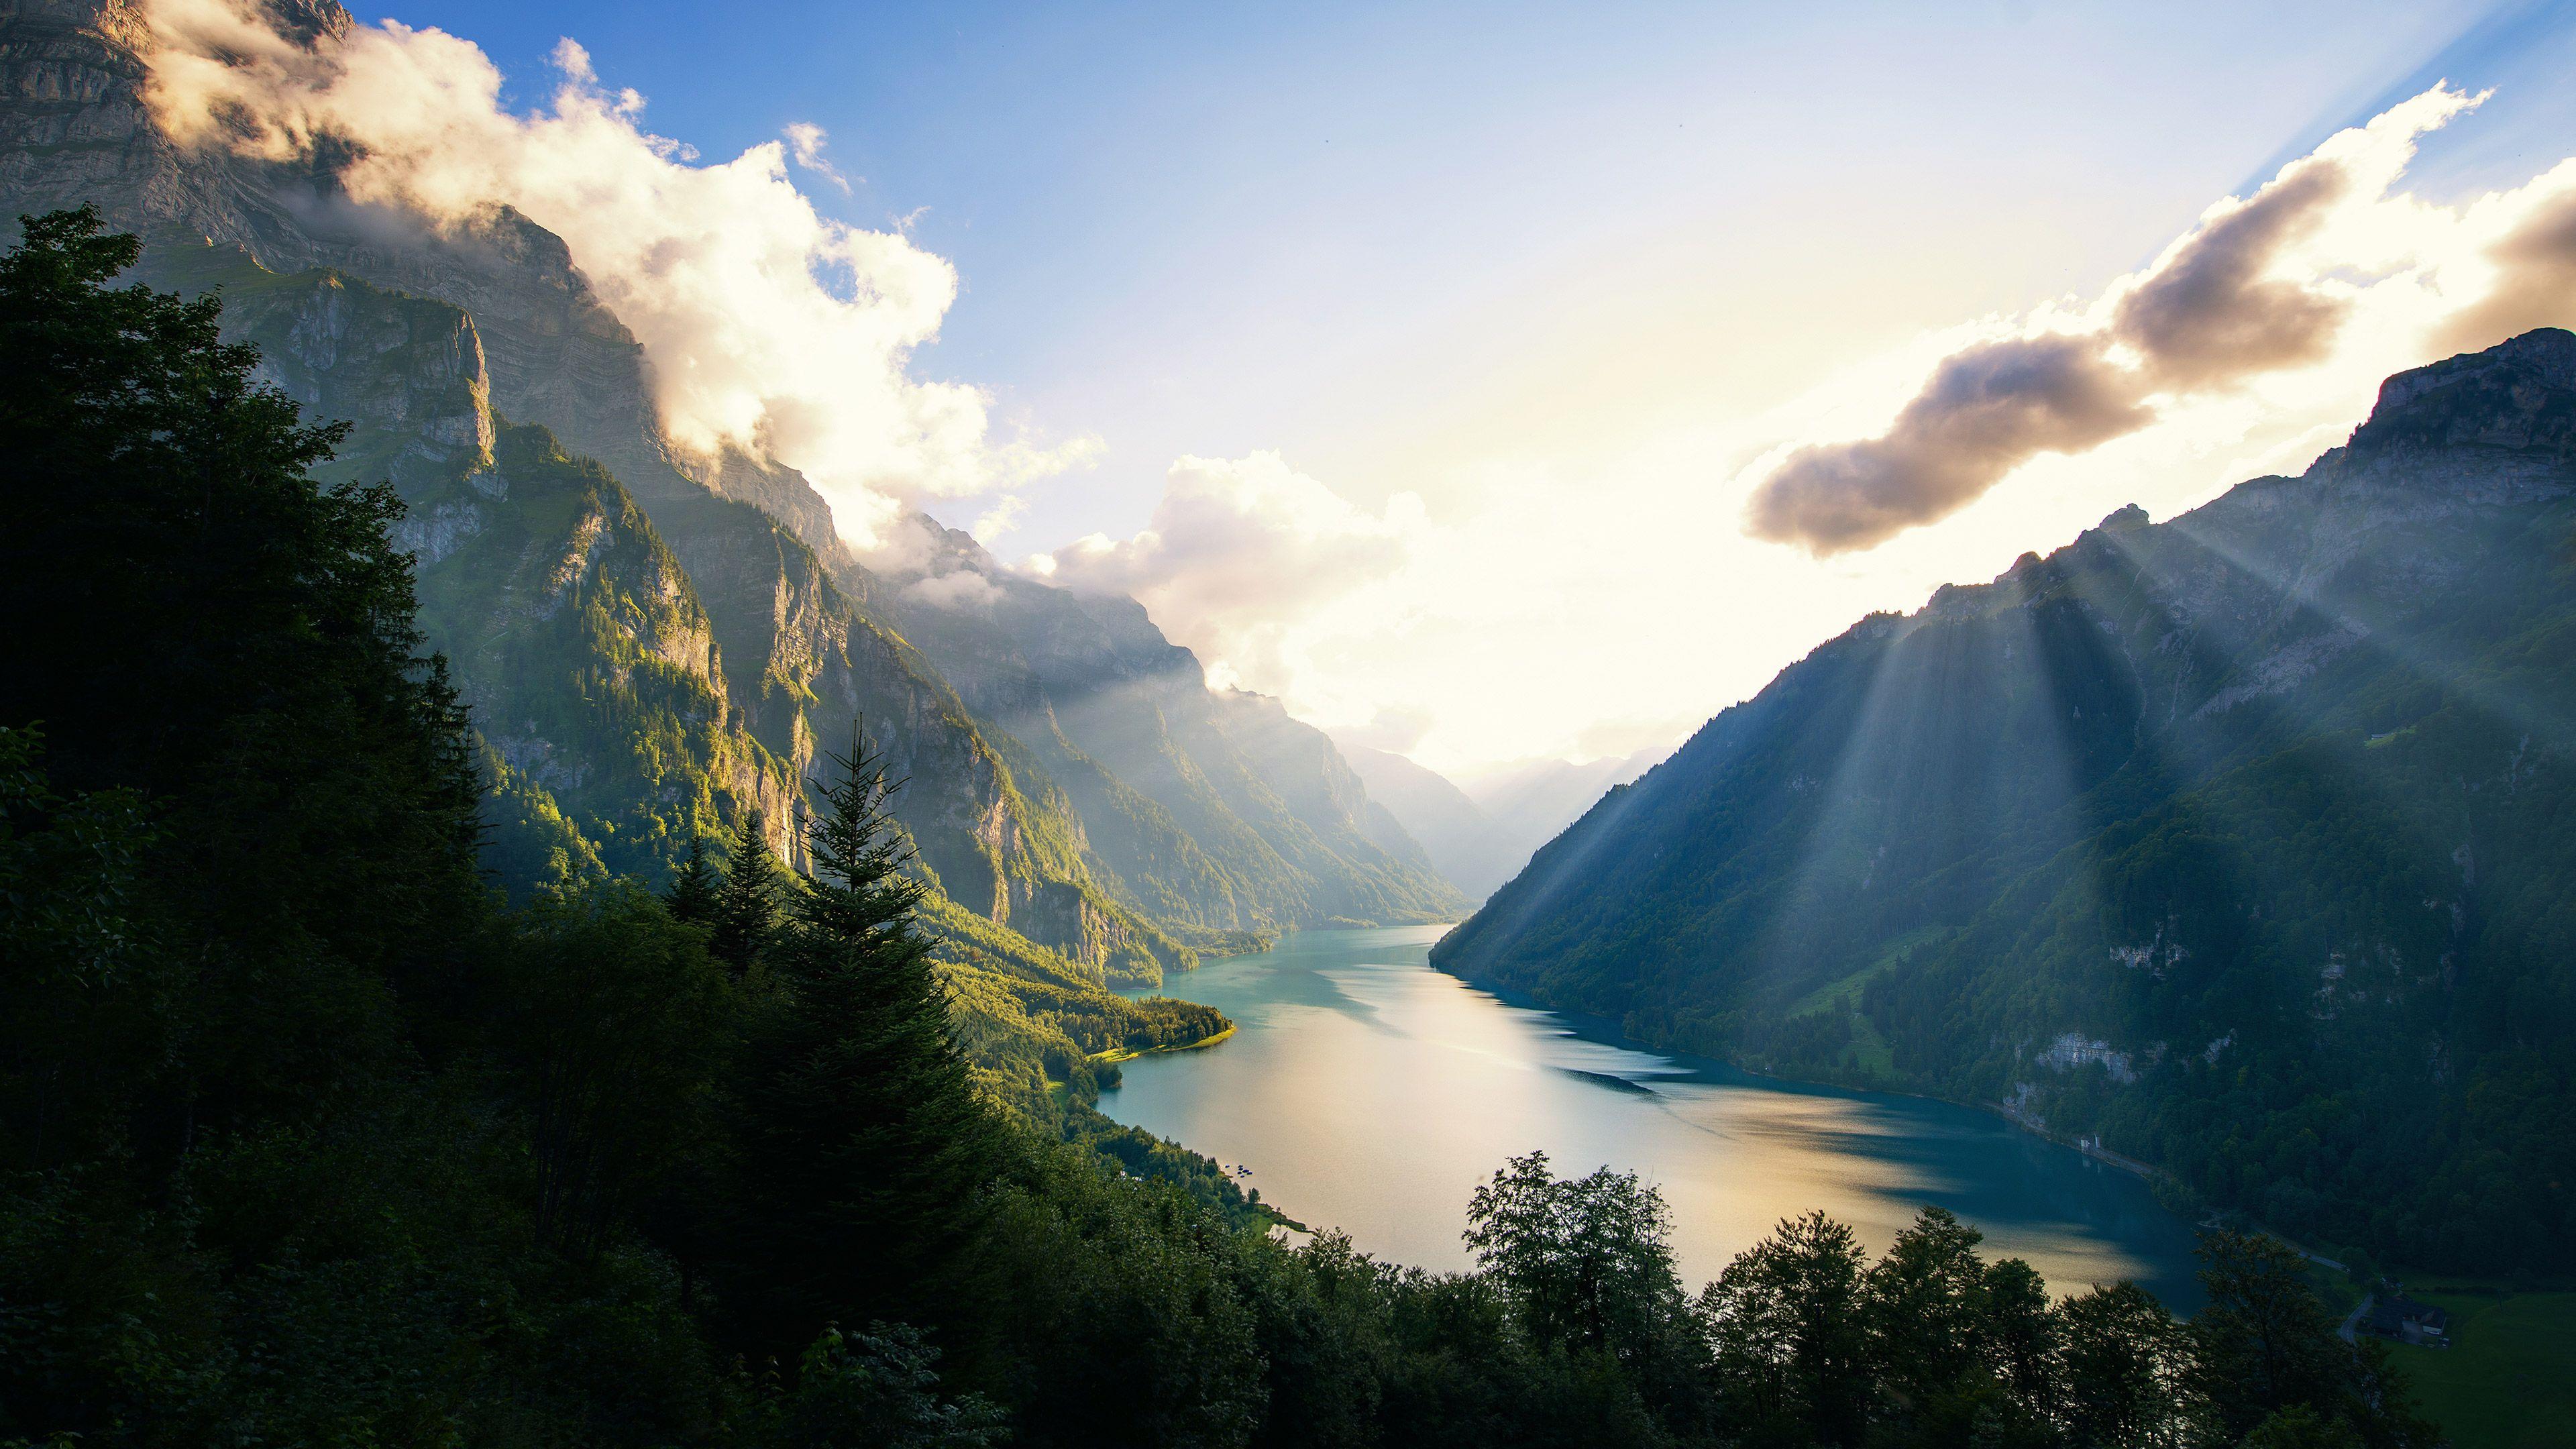 Switzerland 4k Wallpapers - Top Free Switzerland 4k Backgrounds